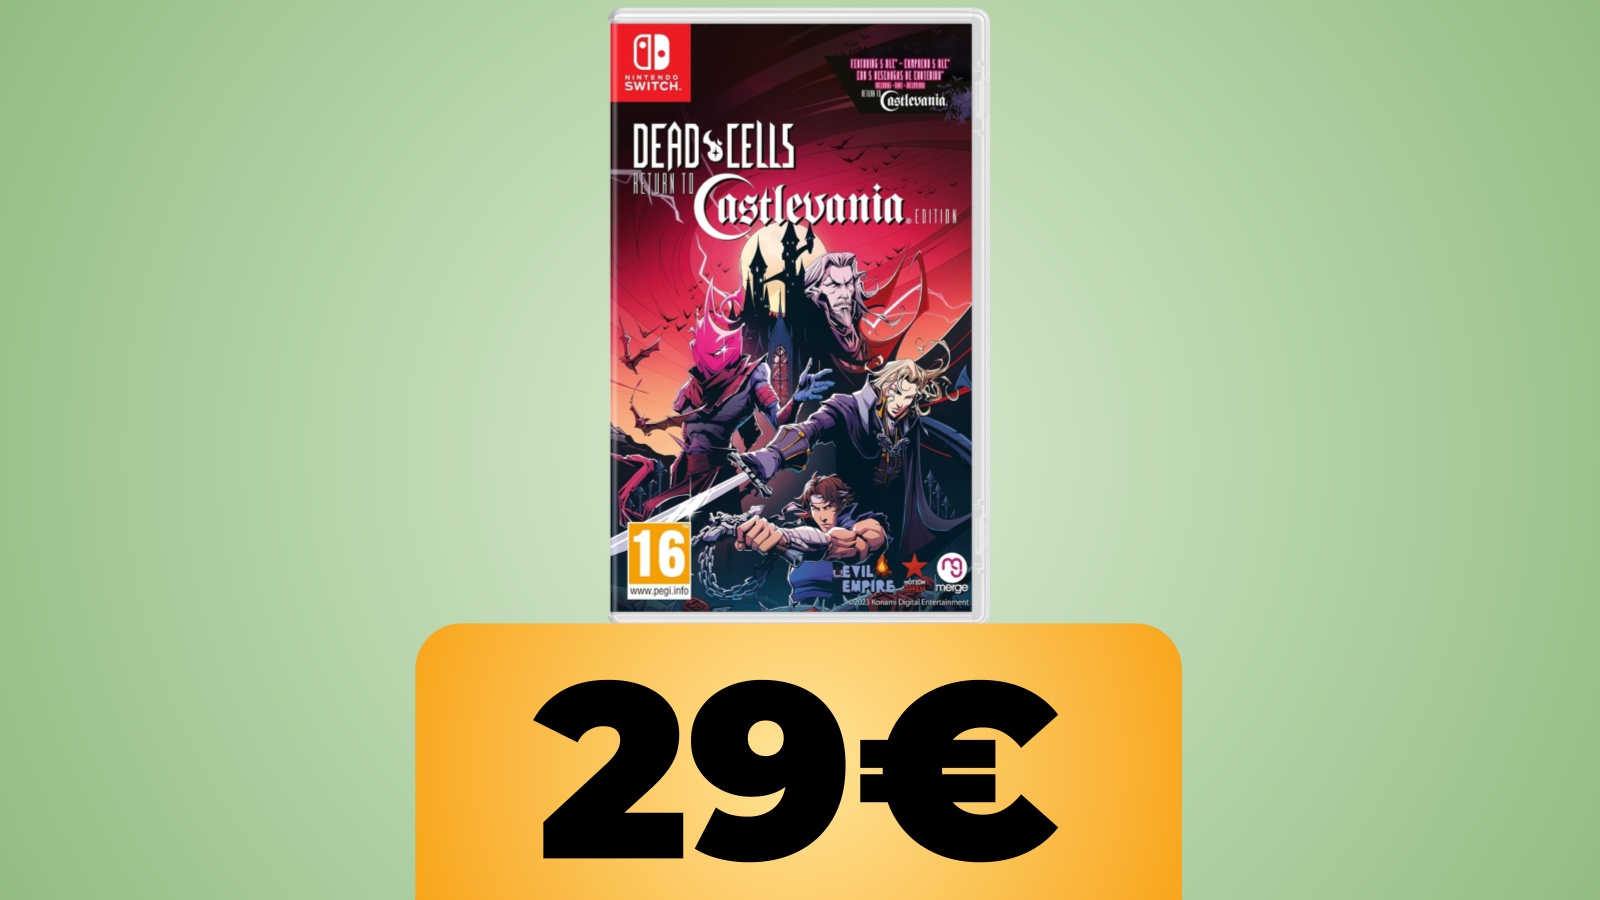 Dead Cells: Return to Castlevania per Nintendo Switch e PS5 è in sconto su Amazon